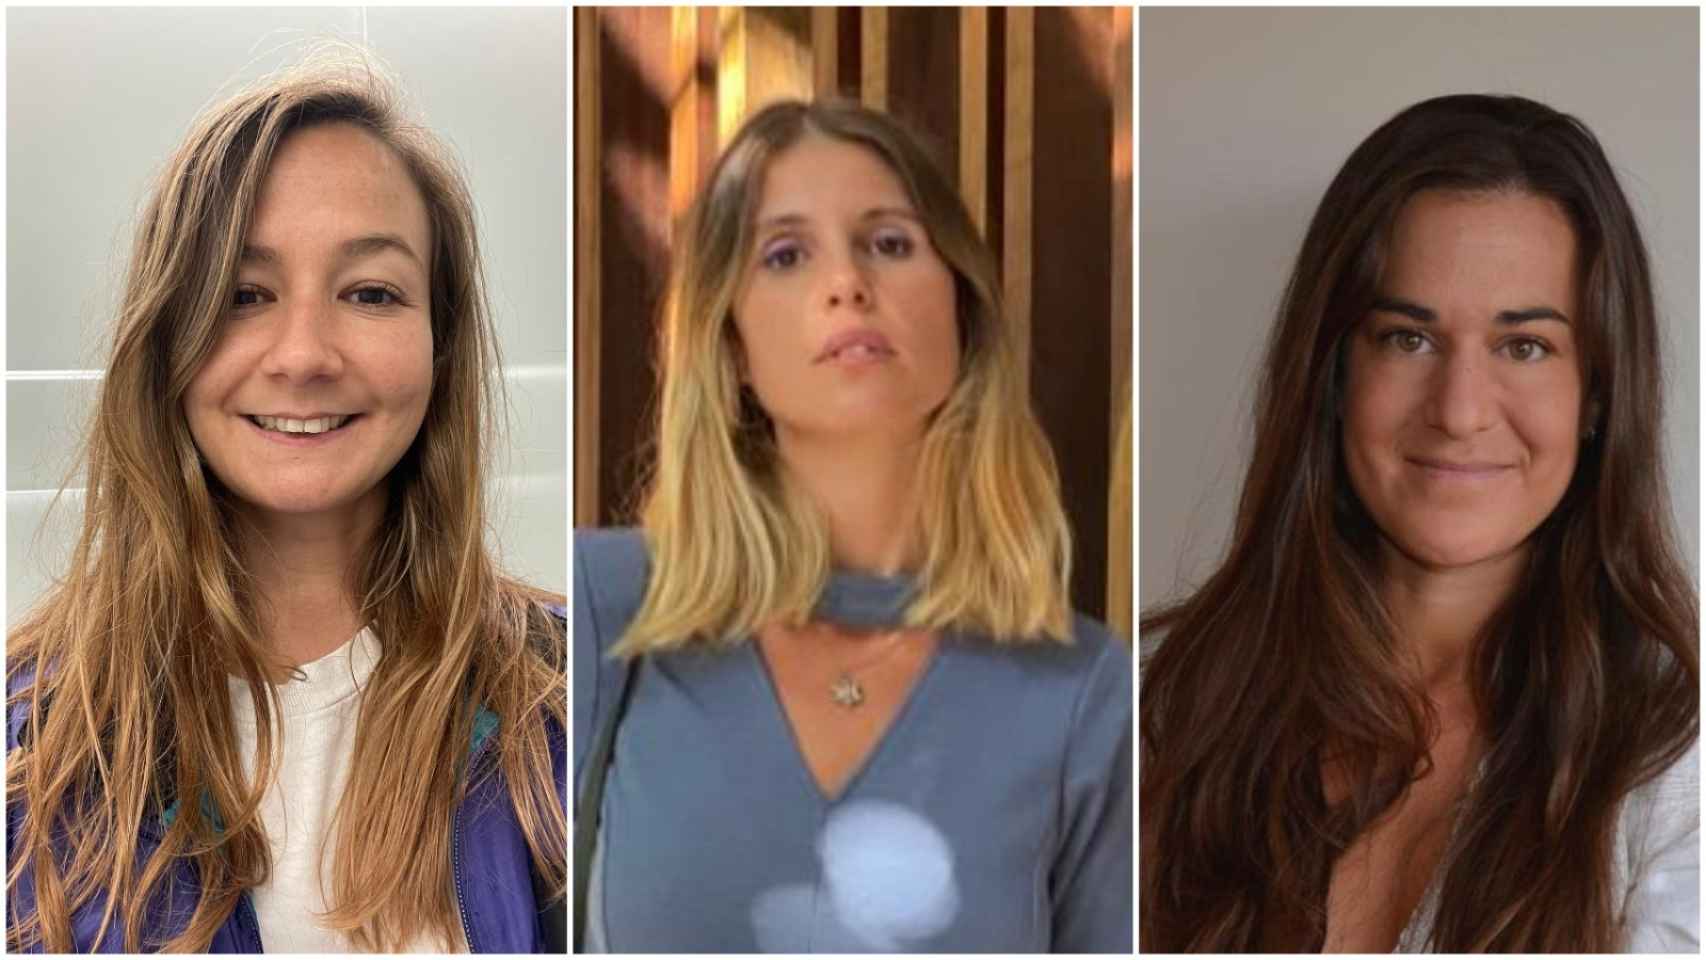 Tres mujeres ante el dilema de congelar pagar 4.000 € o arriesgarse a no tener hijos